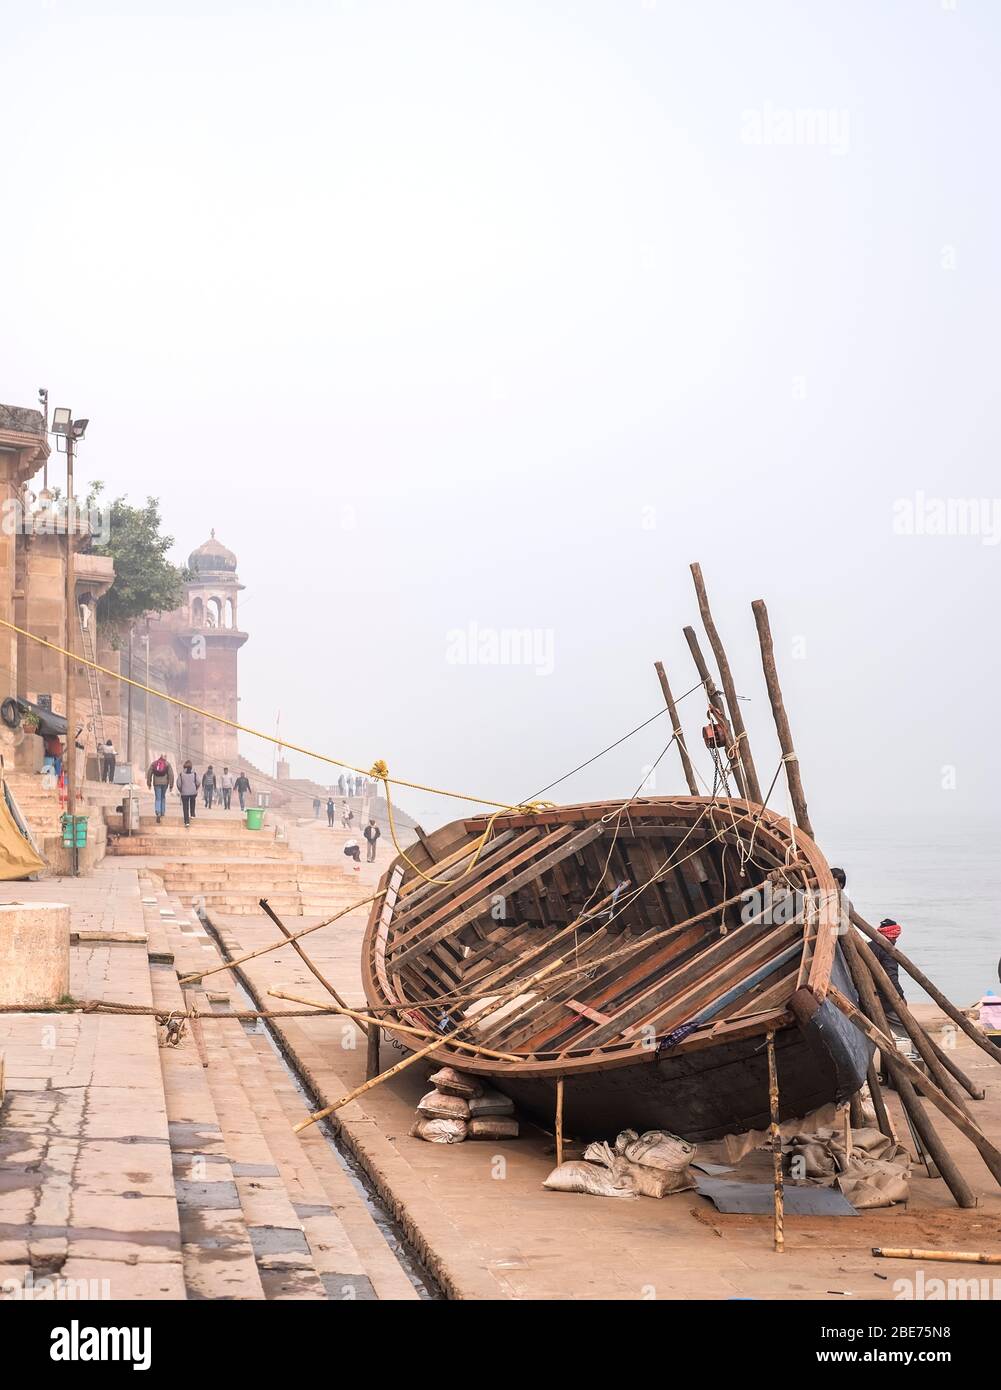 Sanglier touristique en cours de réparation sur les rives du Ganga, Varanasi, Inde. Banque D'Images